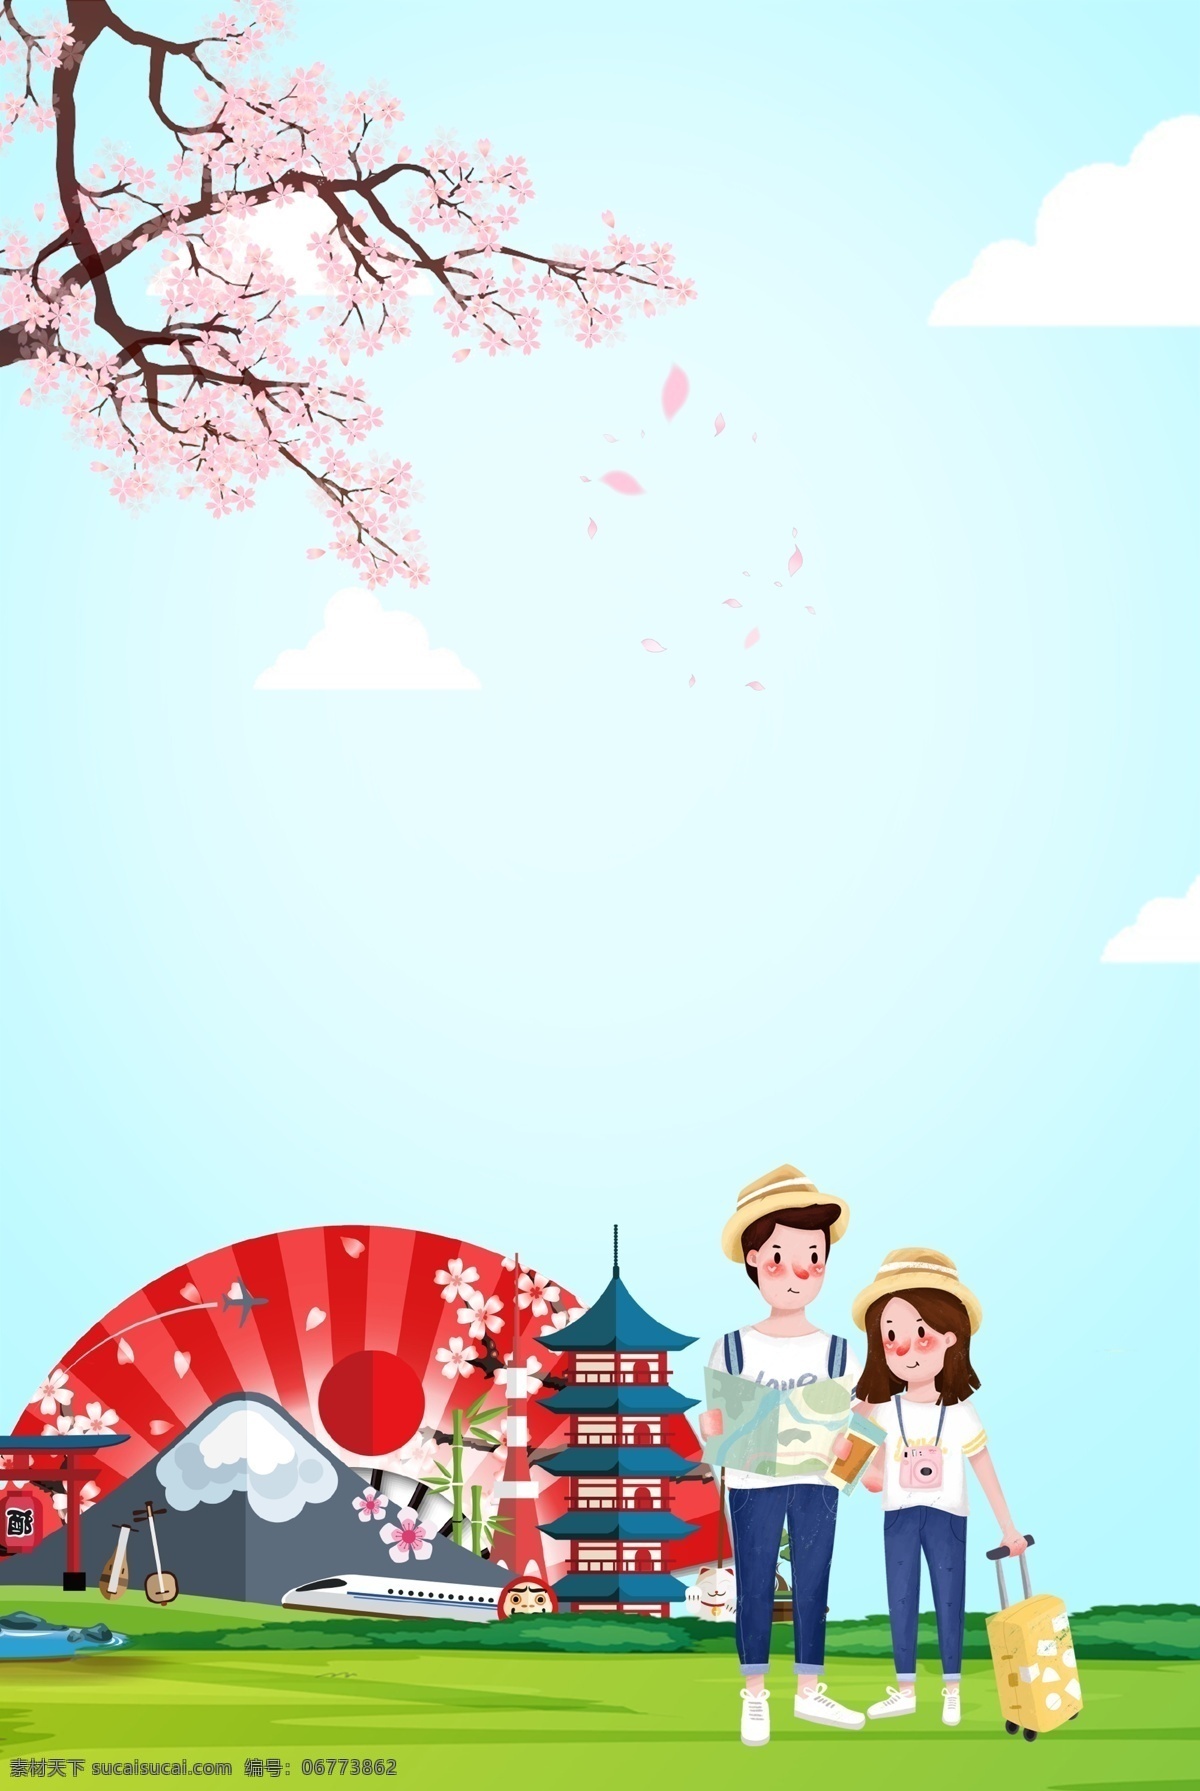 创意 合成 情侣 旅游 日本旅游 日本文化 樱花 蓝天 草地 卡通 背景